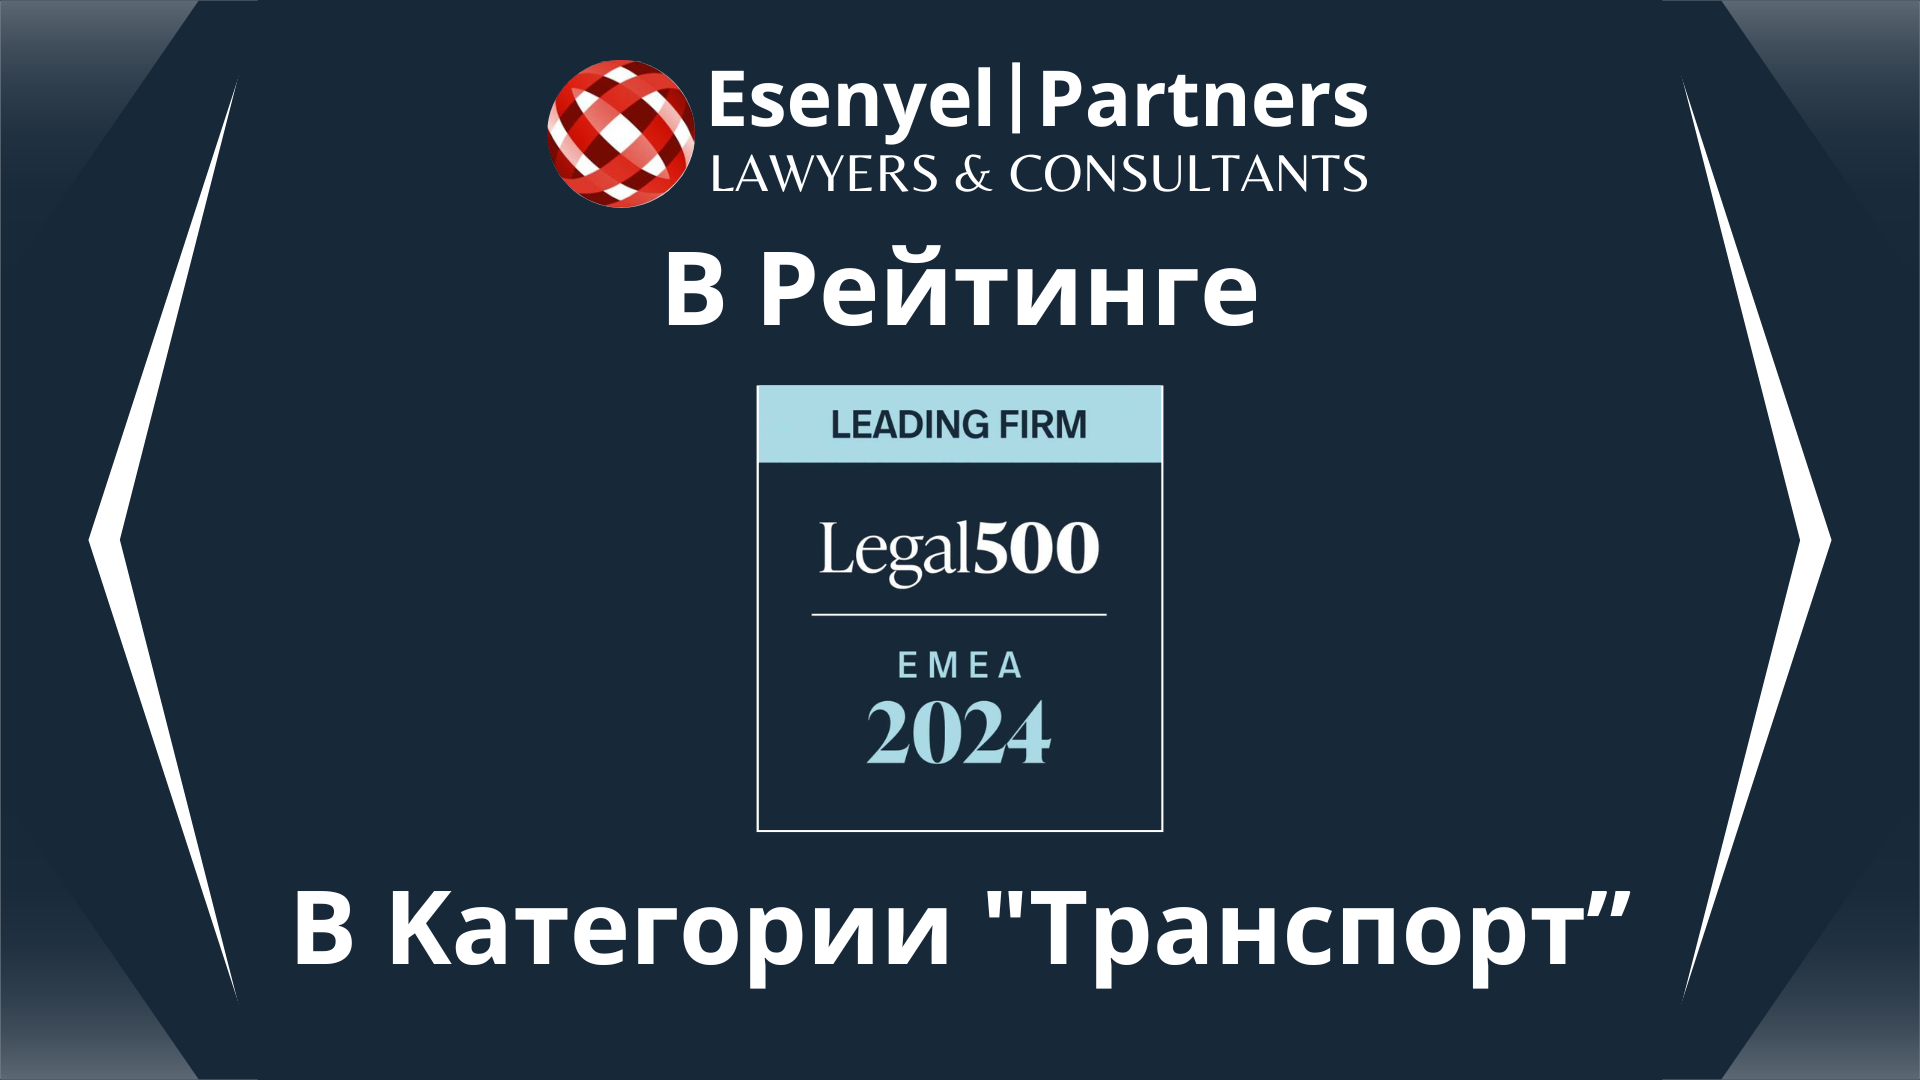 Юридическая фирма "Esenyel | Partners" успешно вошла в число ведущих юридических фирм Турции в рейтинге Legal 500